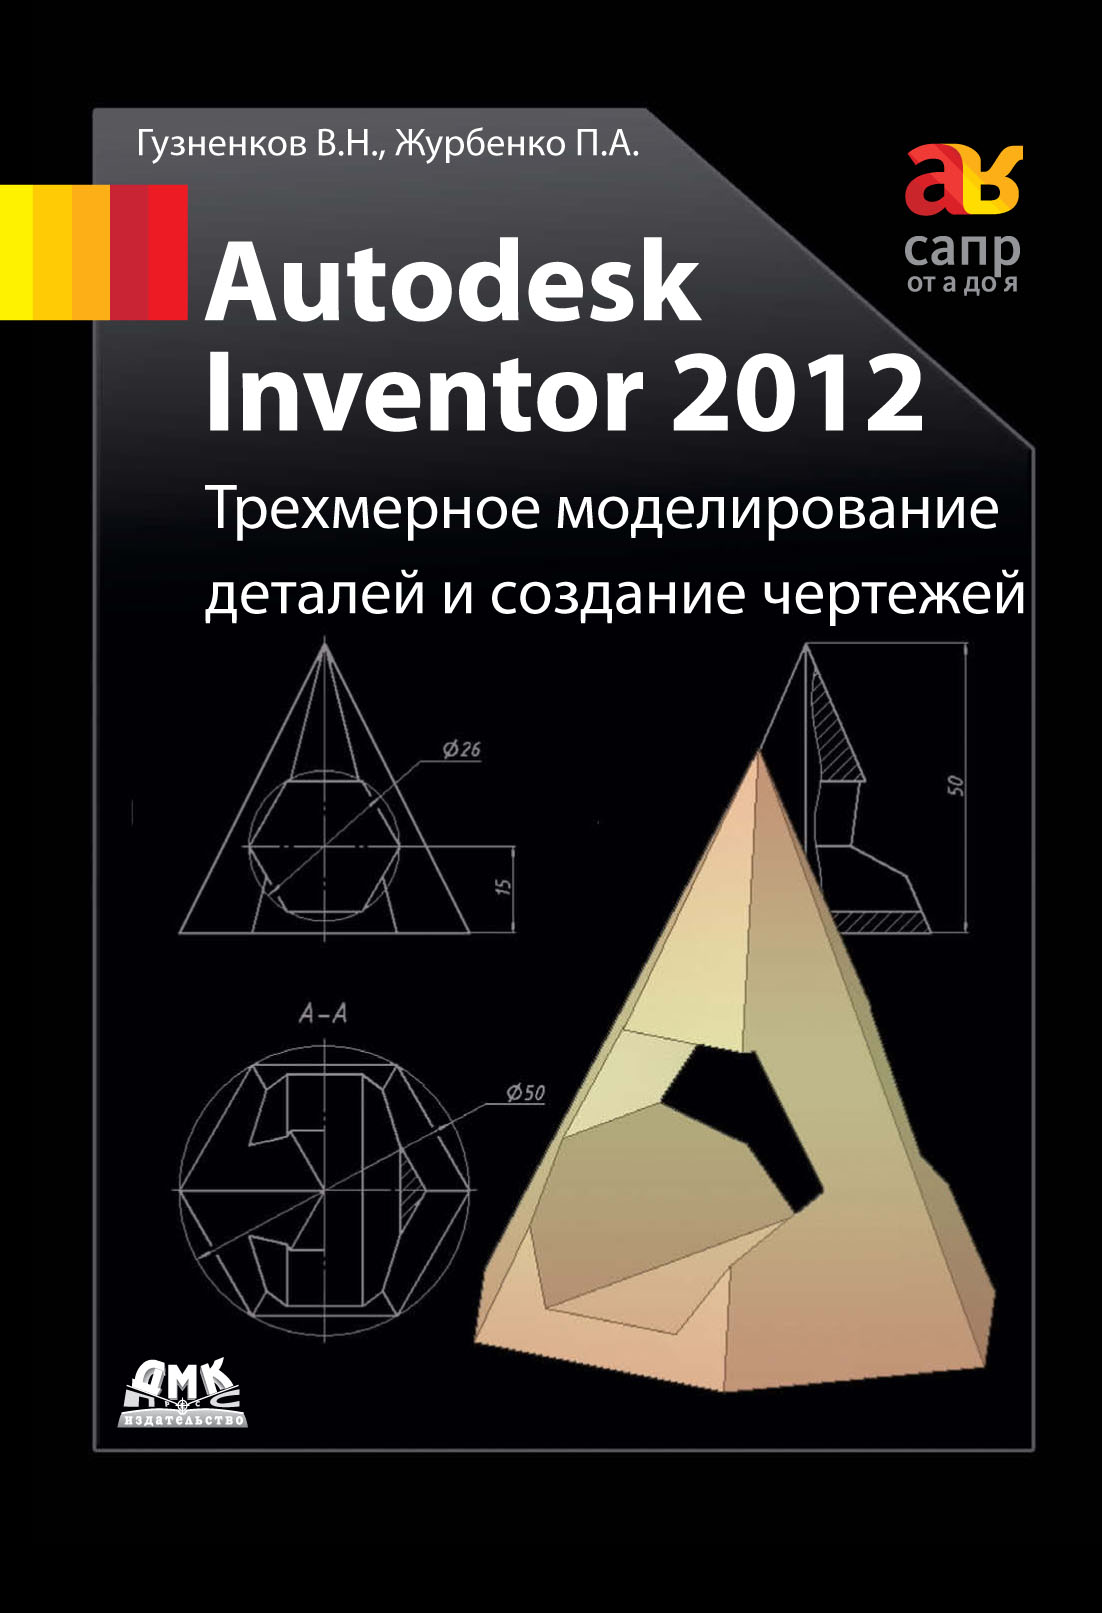 Autodesk Inventor 2012.Трехмерное моделирование деталей и создание чертежей: учебное пособие